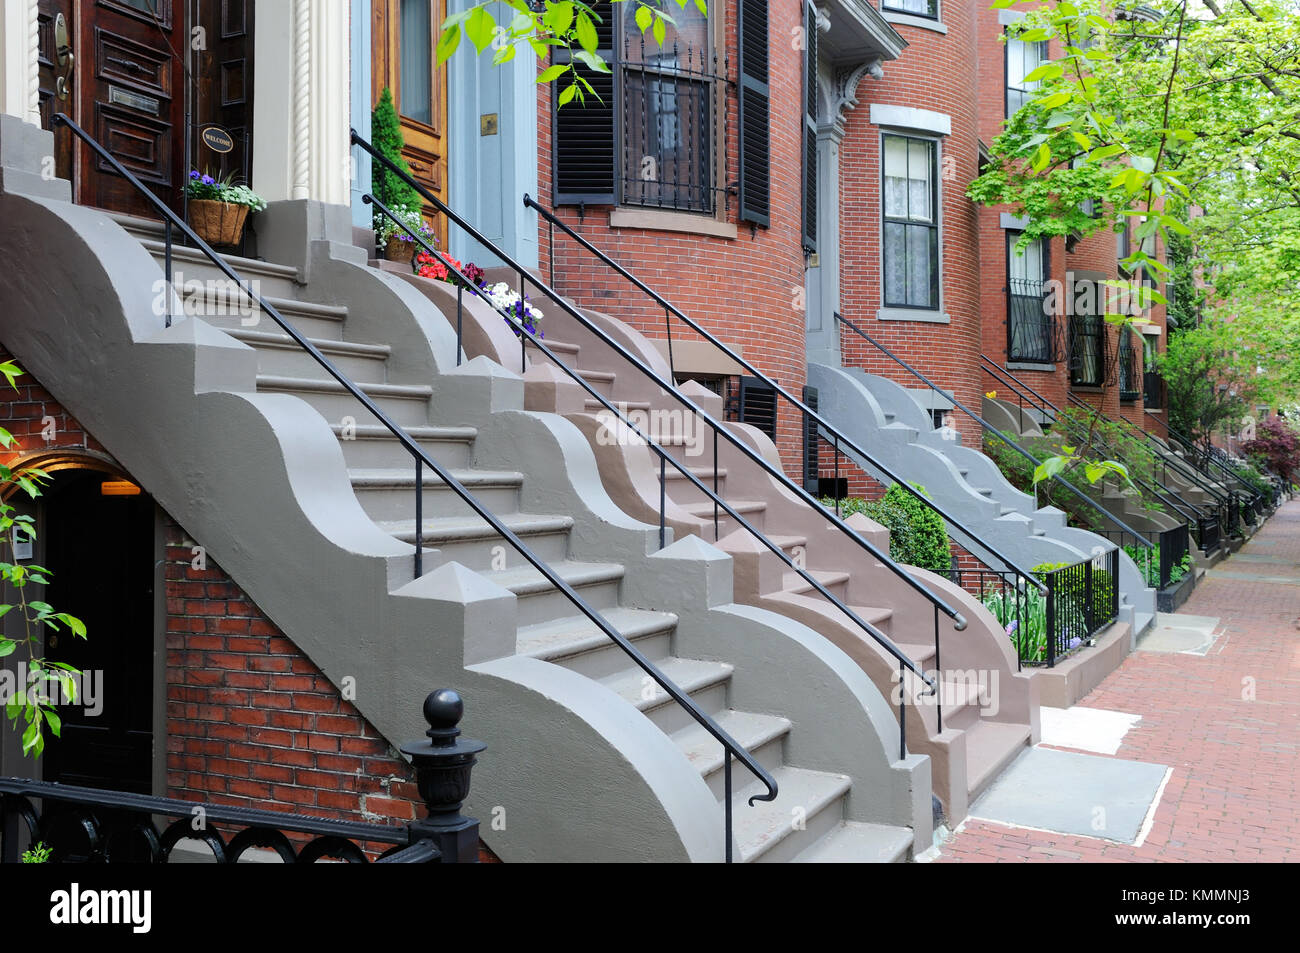 Extrémité sud de Boston, les maisons en rangée de style victorien en briques. et des trottoirs, des bâtiments aparment étapes colorés avec des pierres de garniture ondulée, exprimés en fer forgé et des clôtures, ONU Banque D'Images